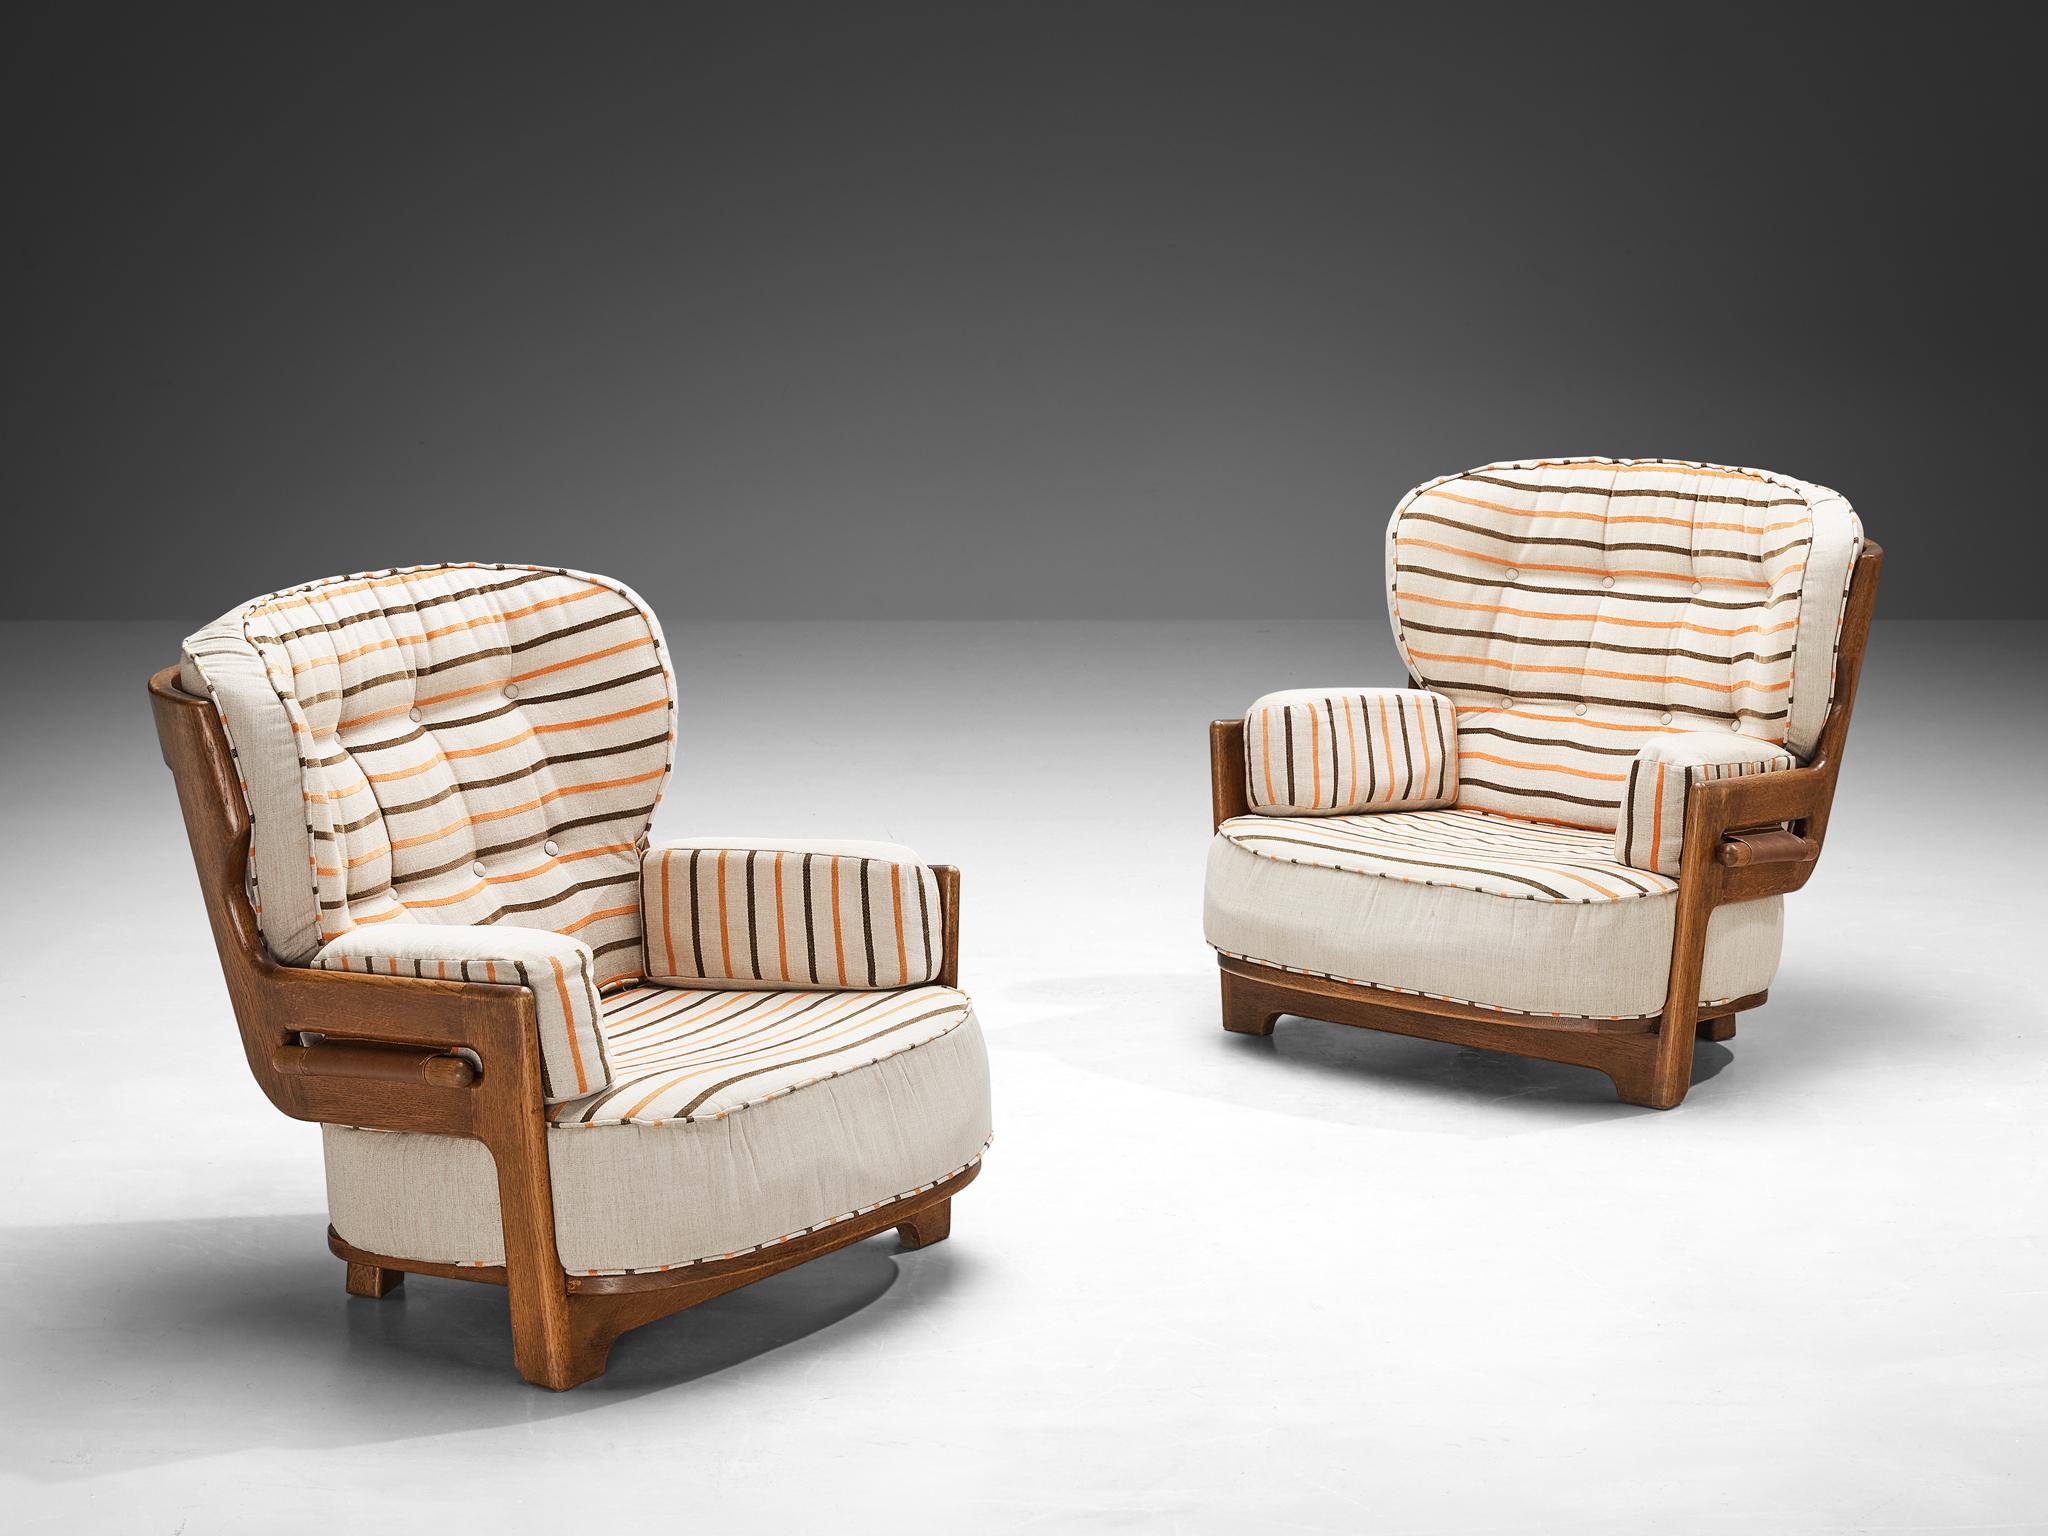 Guillerme et Chambron pour Votre Maison, paire de chaises longues, modèle 'Denis', tissu, chêne, France, années 1960.

Cette chaise longue 'Denis' a été conçue par le duo de designers français Jacques Chambron et Robert Guillerme. Le design se